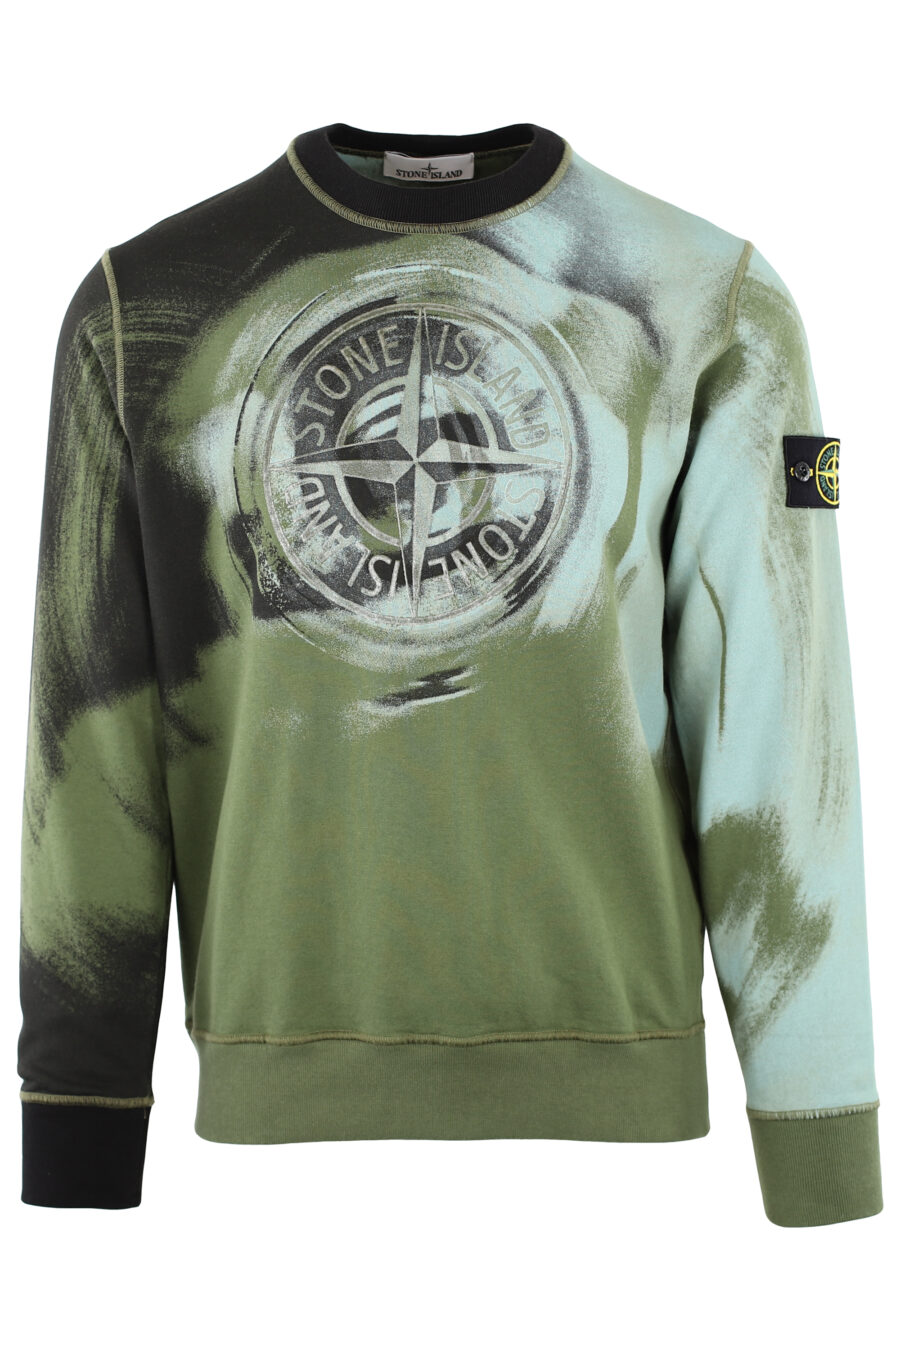 Militärgrünes Sweatshirt mit blauem und schwarzem verzerrtem Aufdruck - IMG 7451